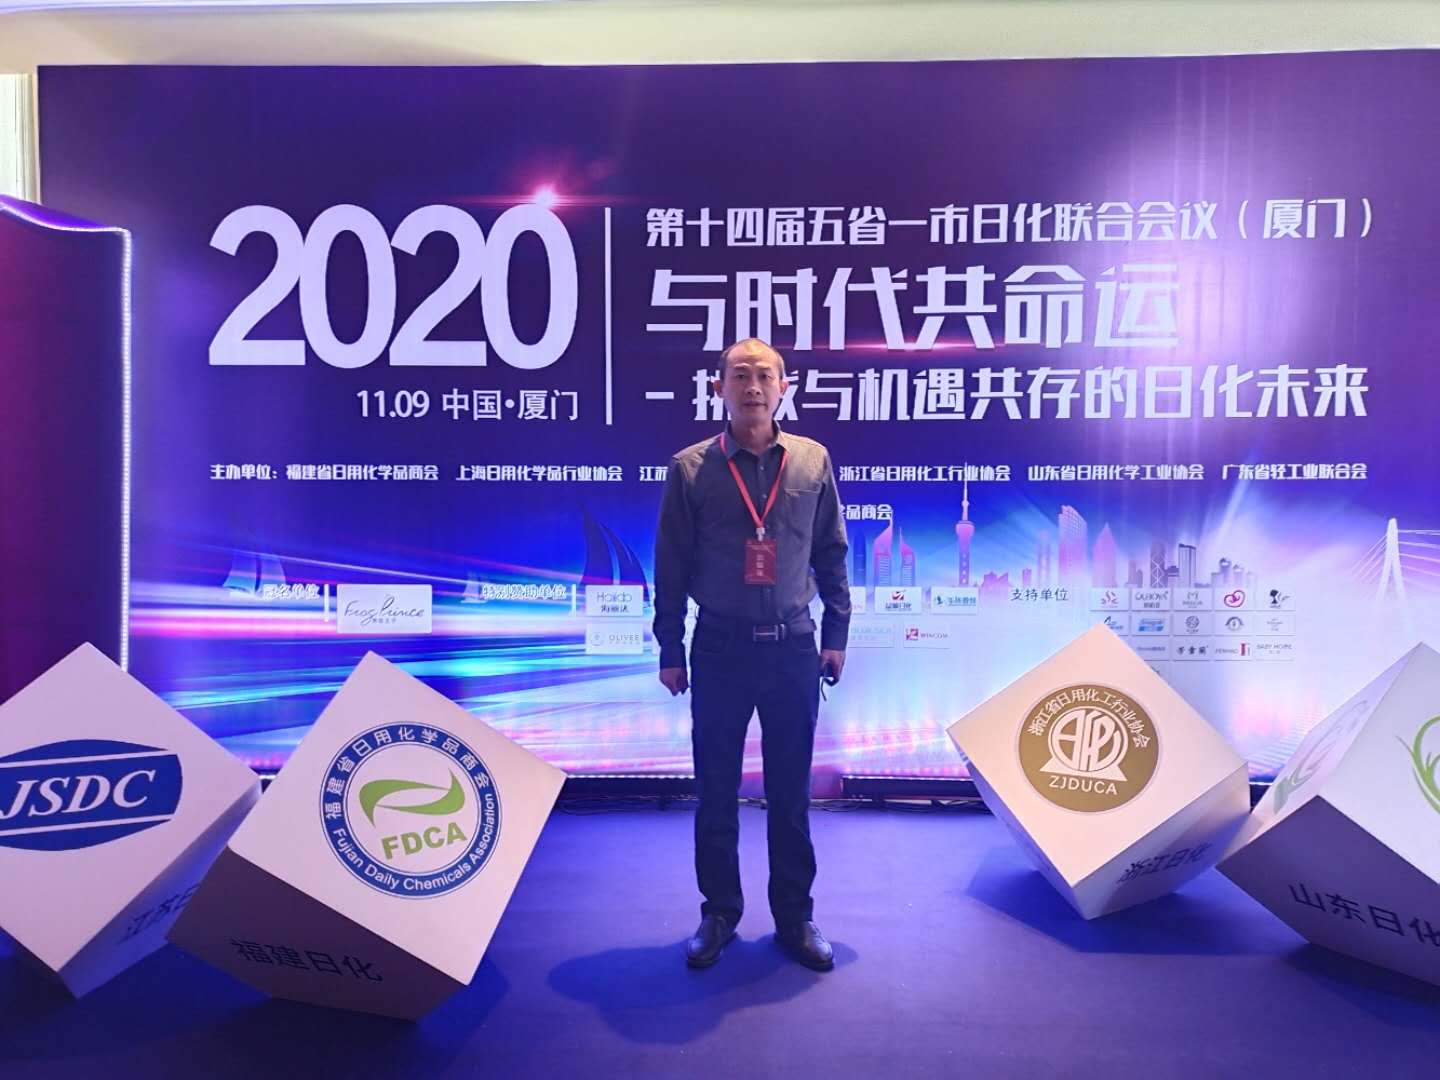 我司董事长王仁博士受邀参加2020年第十四届五省一市联合会议